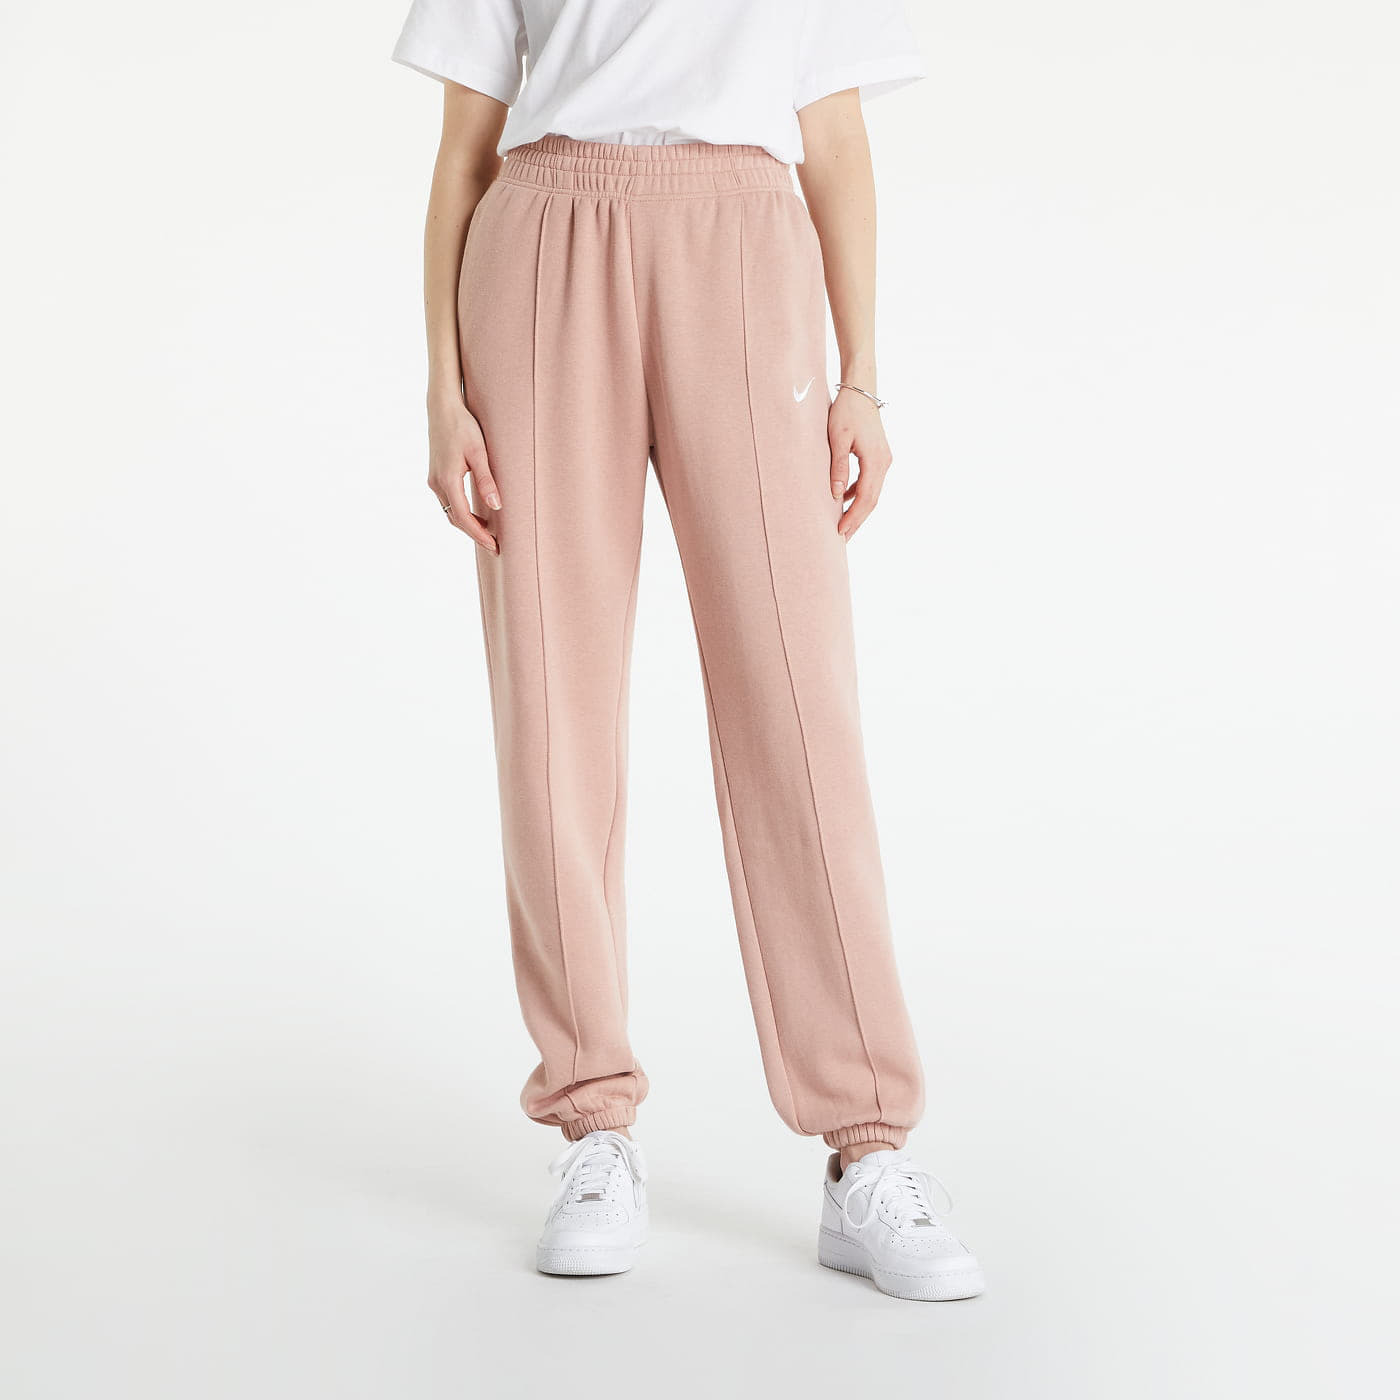 Levně Nike Sportswear Essential Collection Women's Fleece Trousers Pink